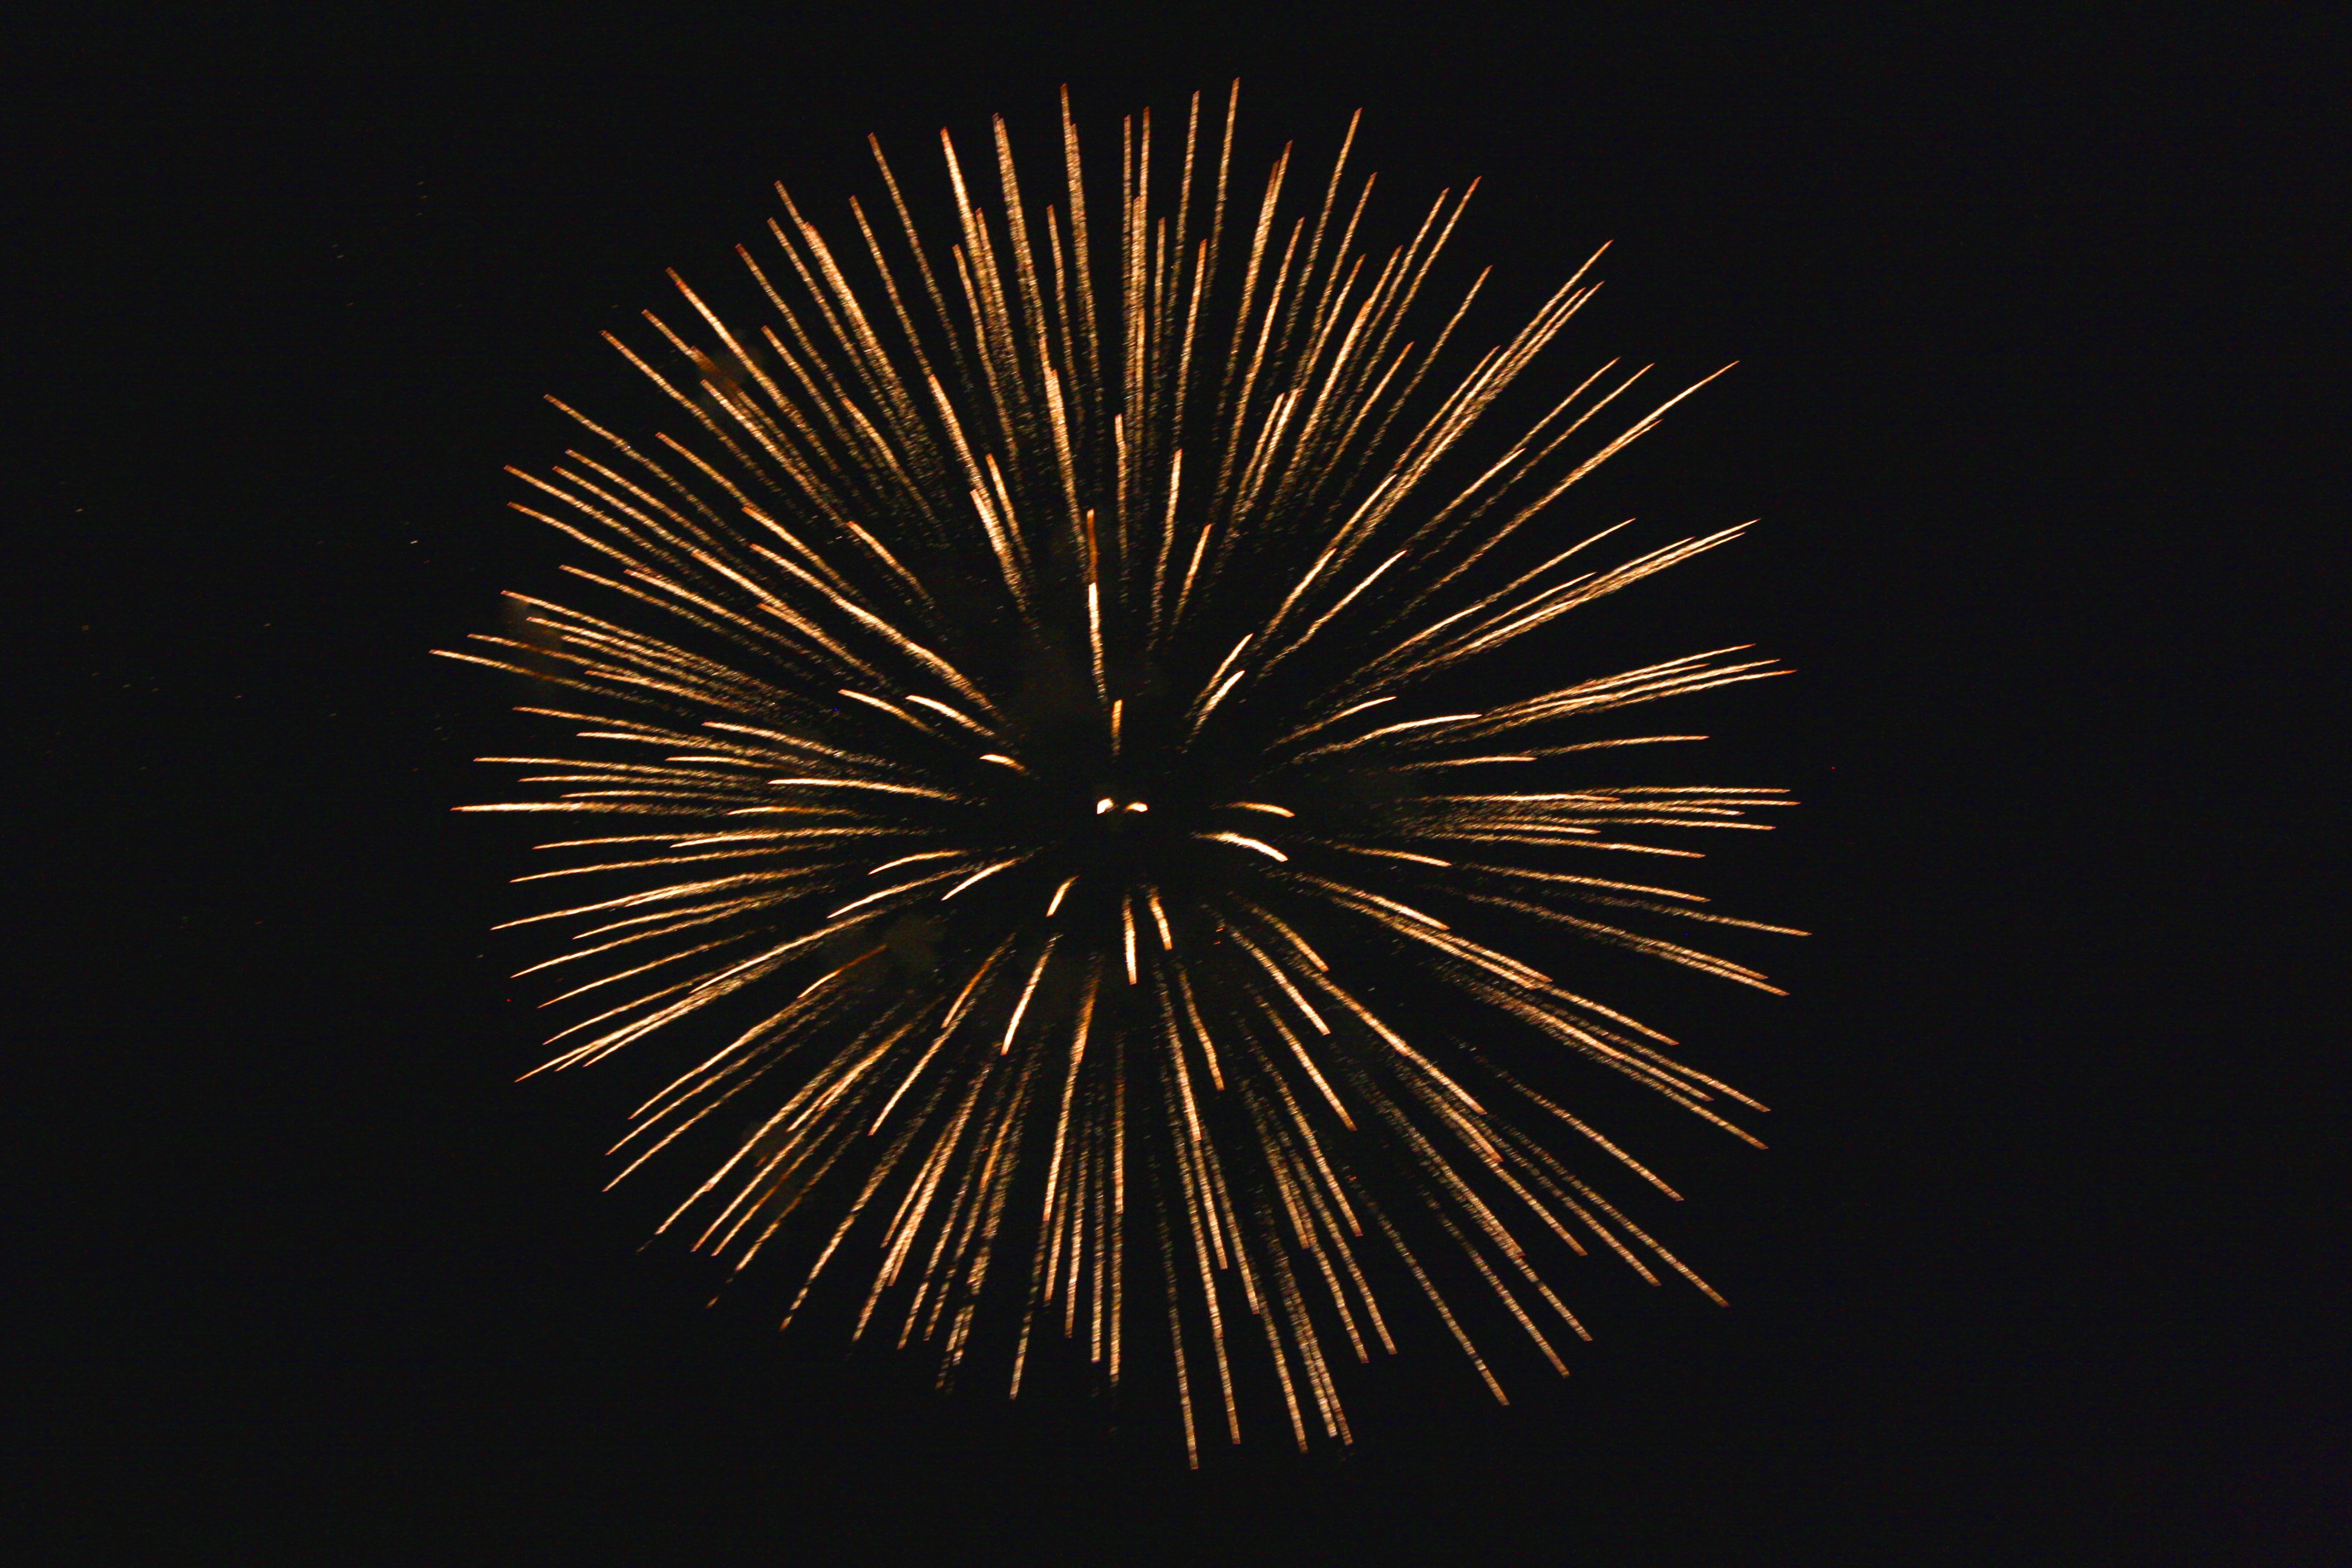 Golden Starburst Fireworks Picture